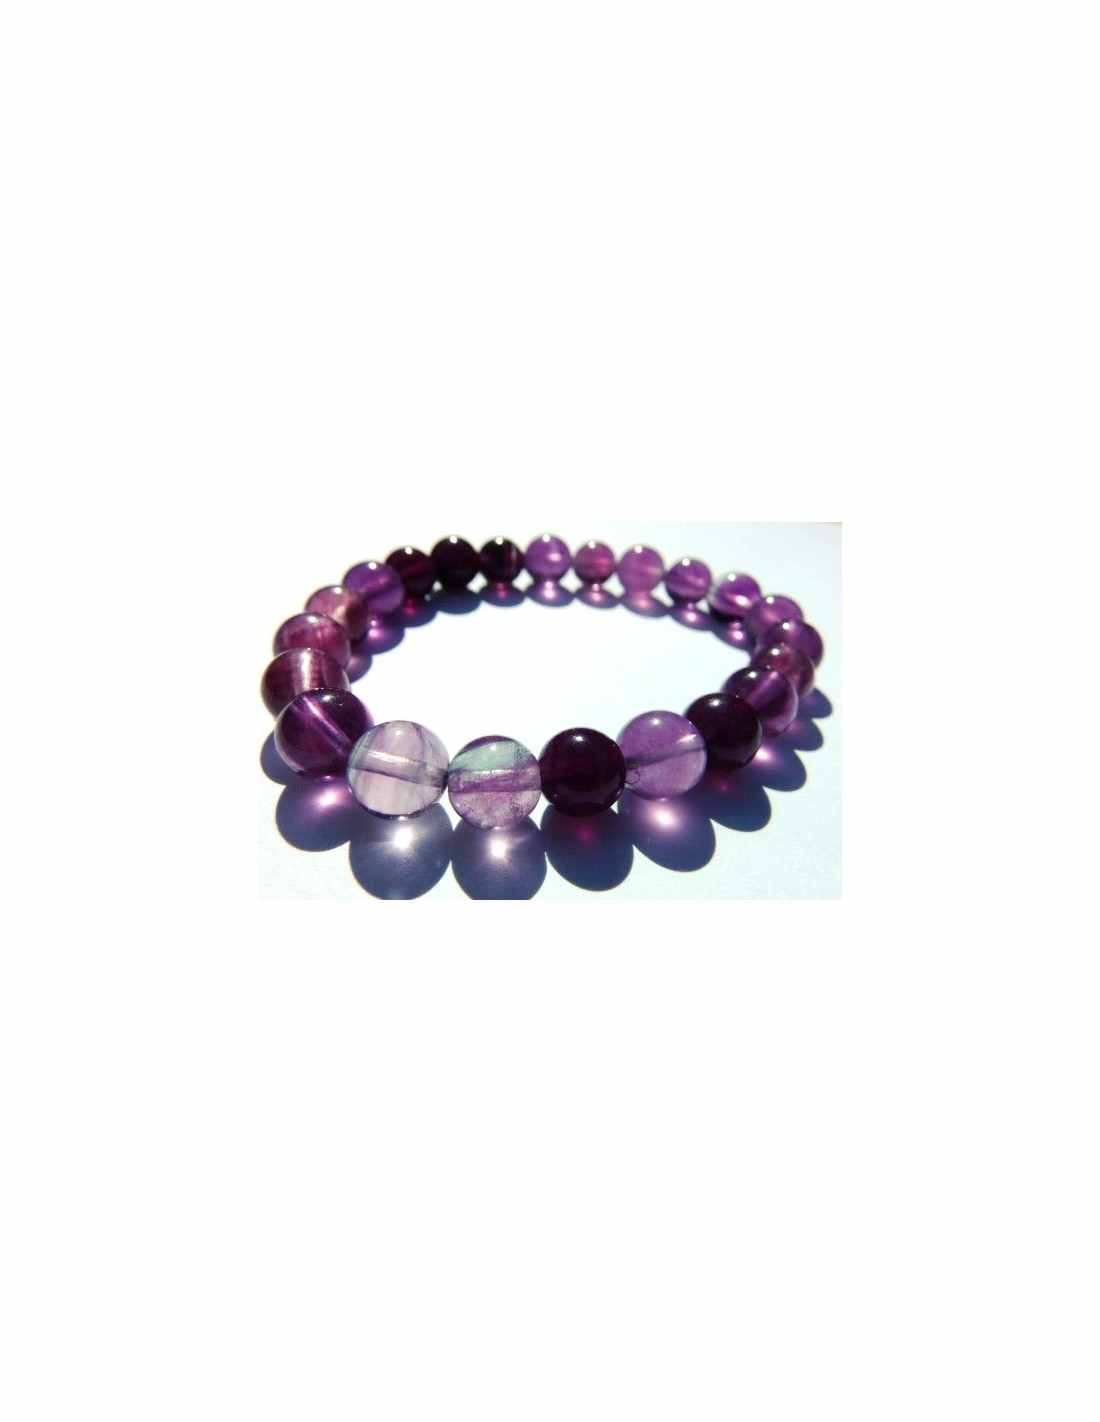 Bracelet en Fluorite verte et violette 8 mm